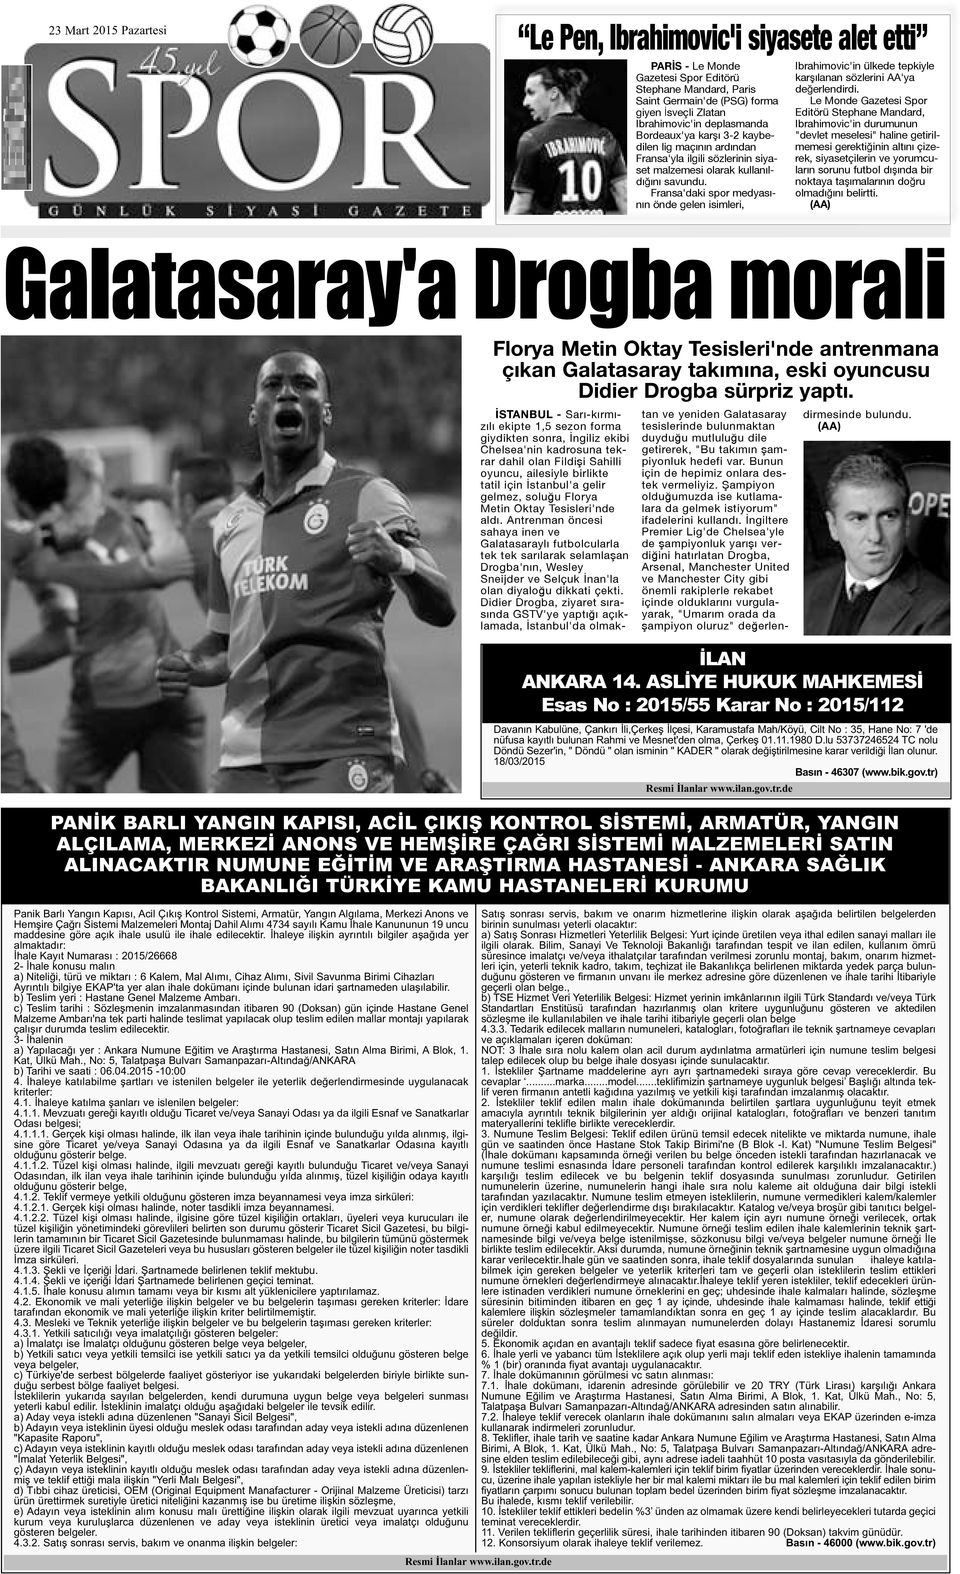 Fransa'daki spor medyasının önde gelen isimleri, Ibrahimovic'in ülkede tepkiyle karşılanan sözlerini AA'ya değerlendirdi.